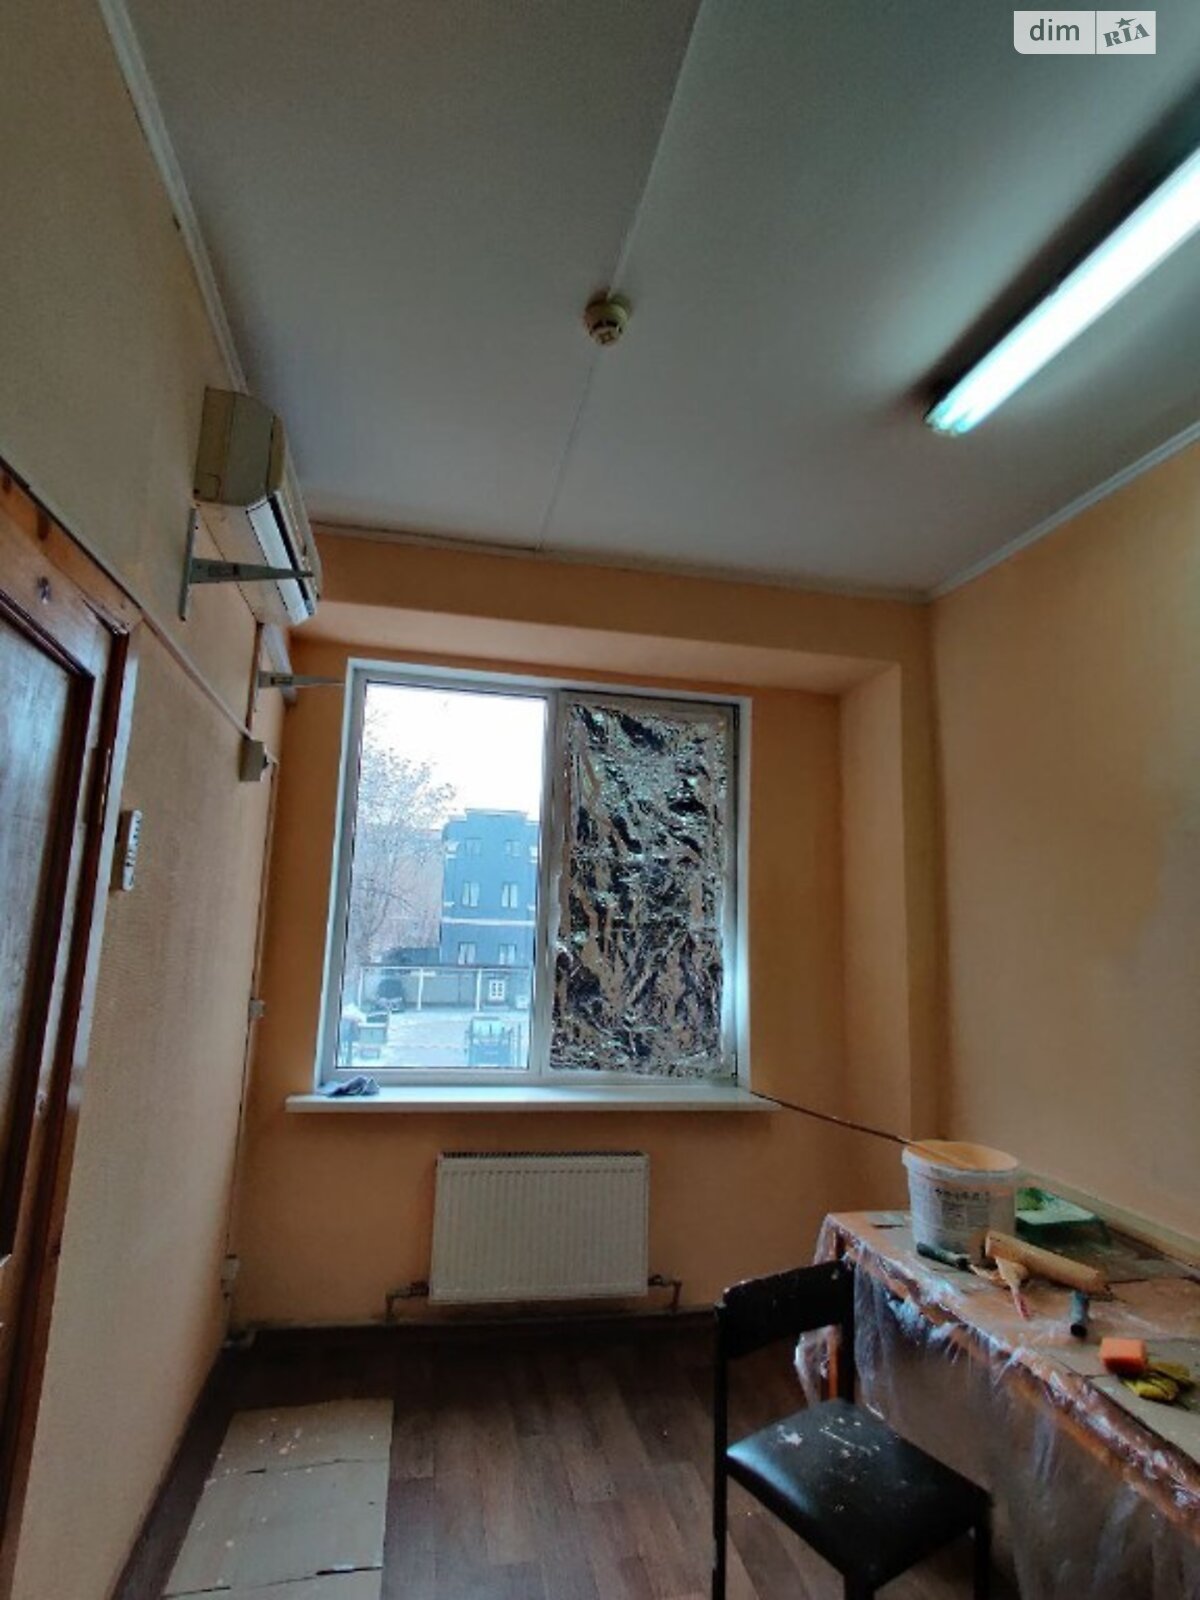 Оренда офісного приміщення в Дніпрі, Ольги княгині вулиця 22, приміщень - 3, поверх - 2 фото 1